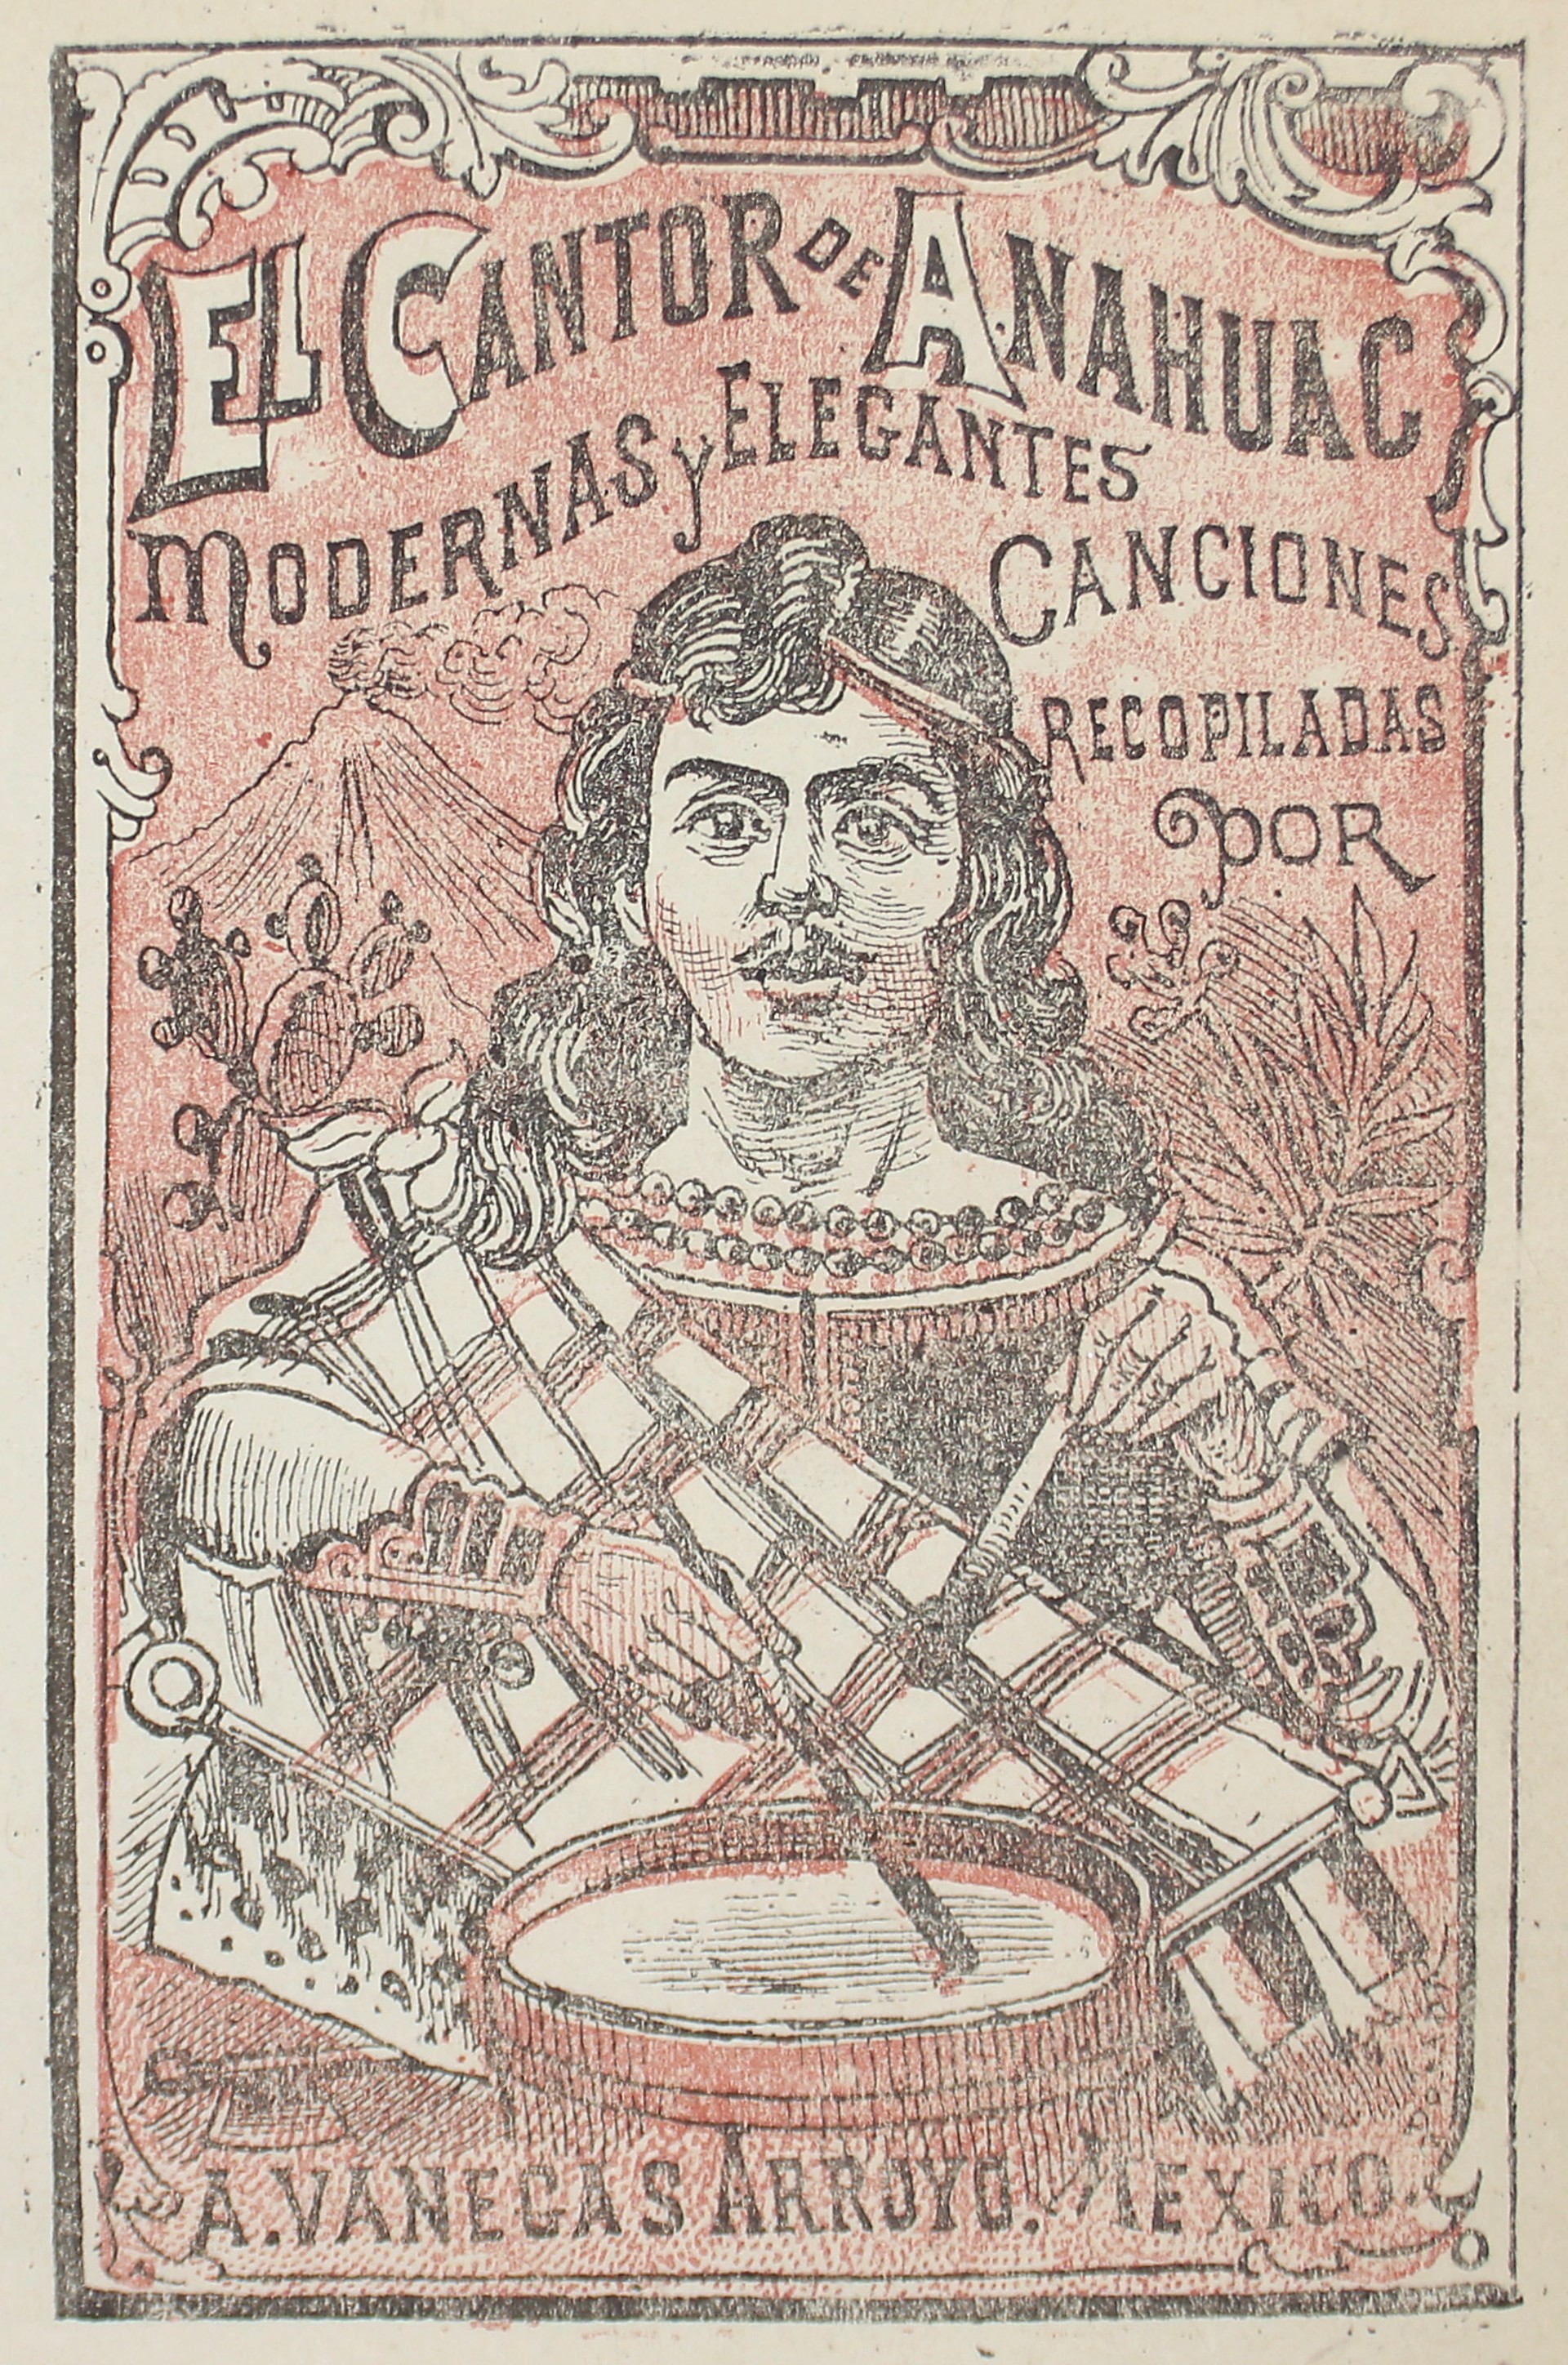 El Cantor de Anahuac. Modernas y elegantes canciones. by José Guadalupe Posada (1852 - 1913)